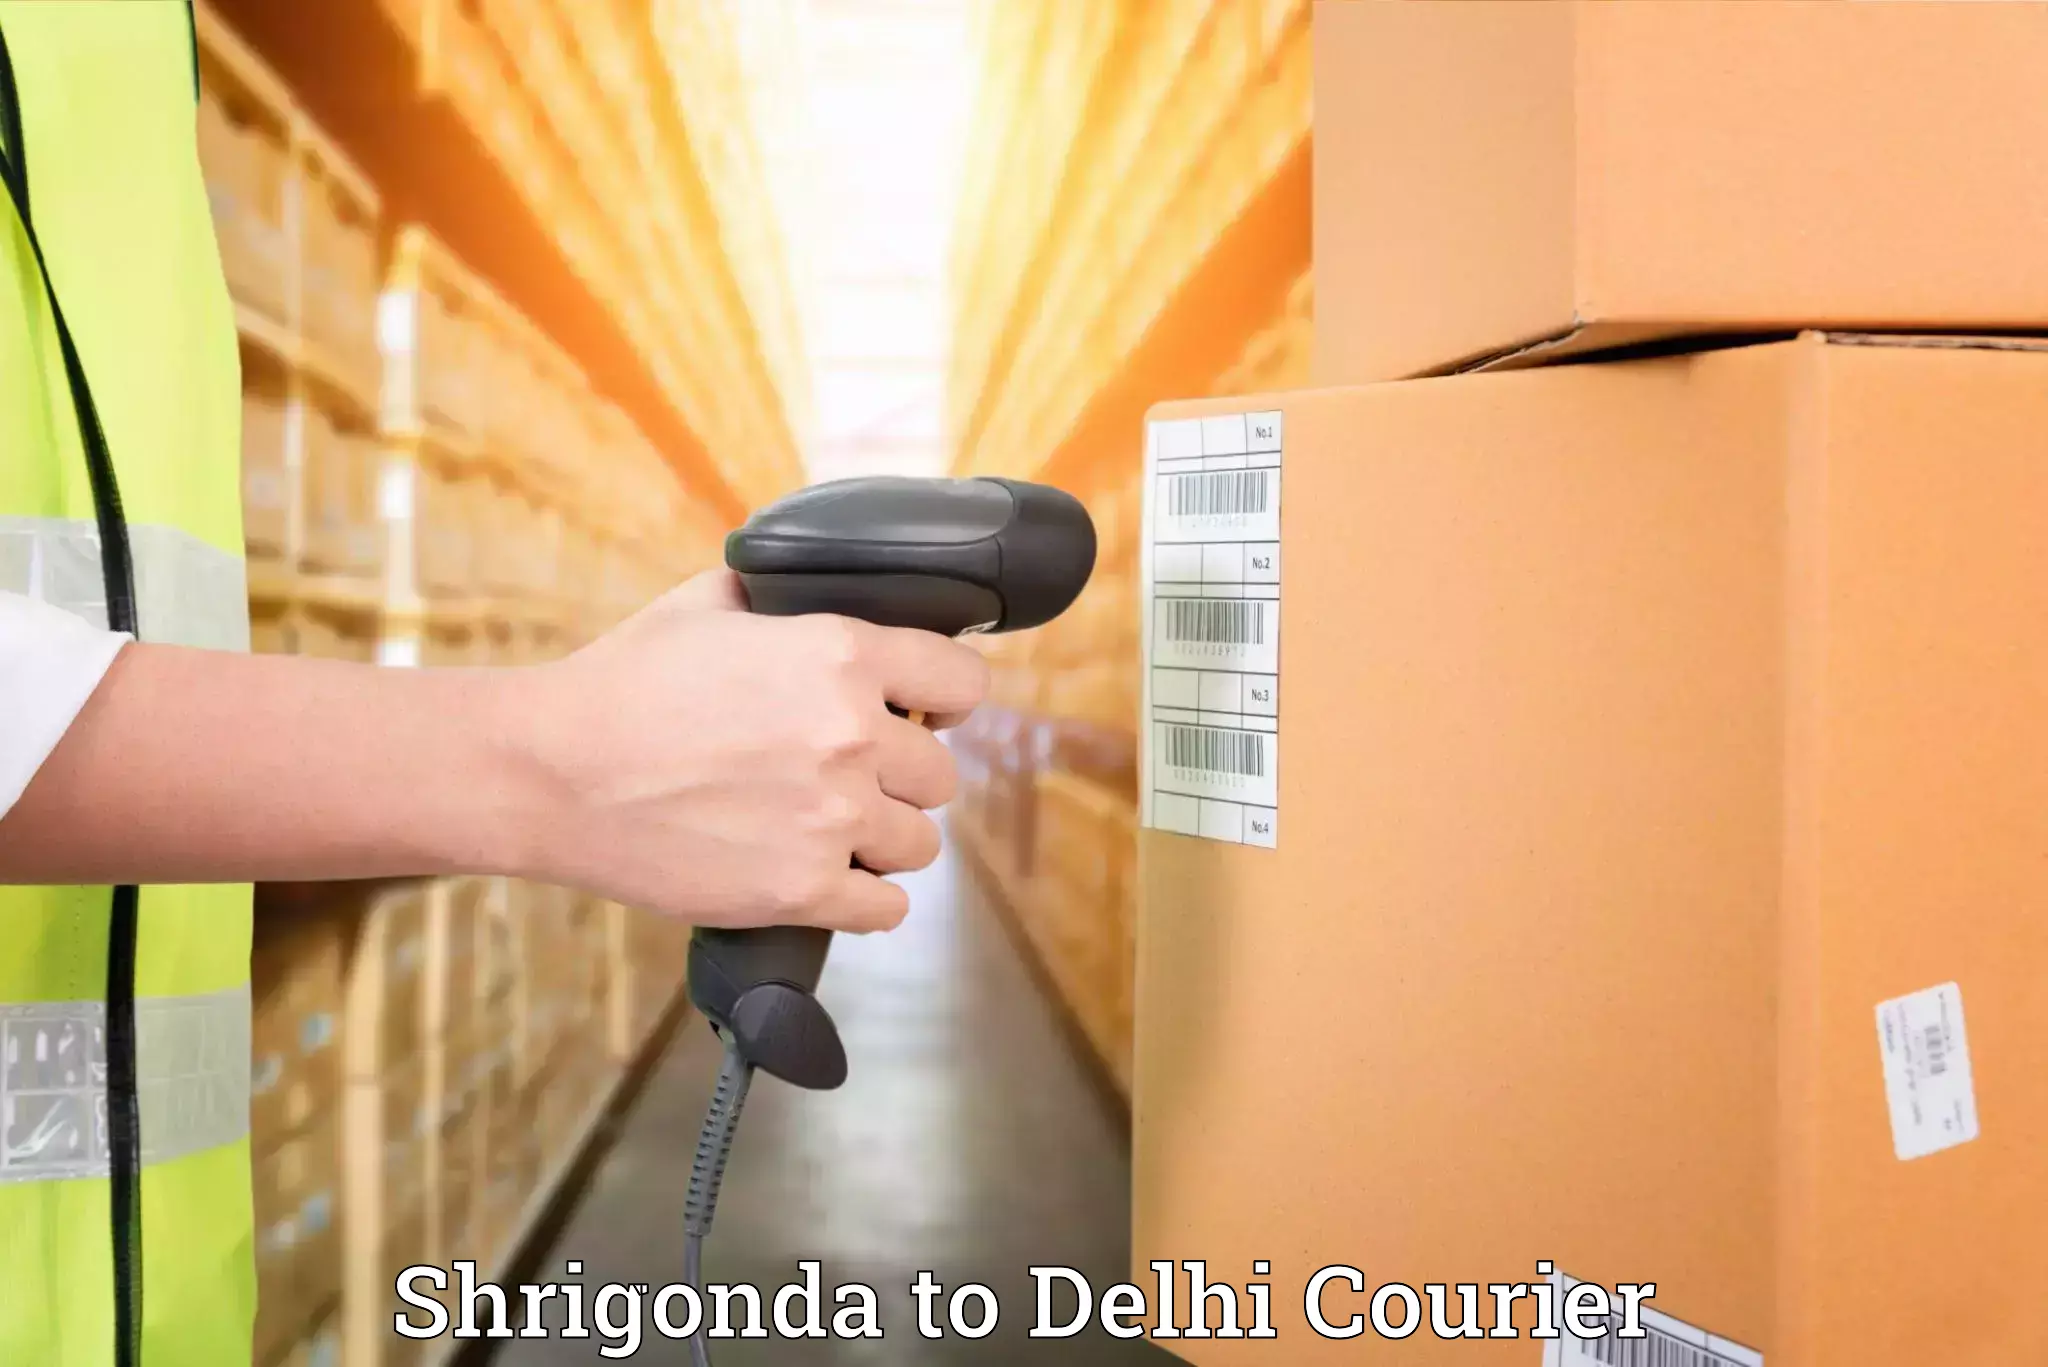 Furniture delivery service Shrigonda to Delhi